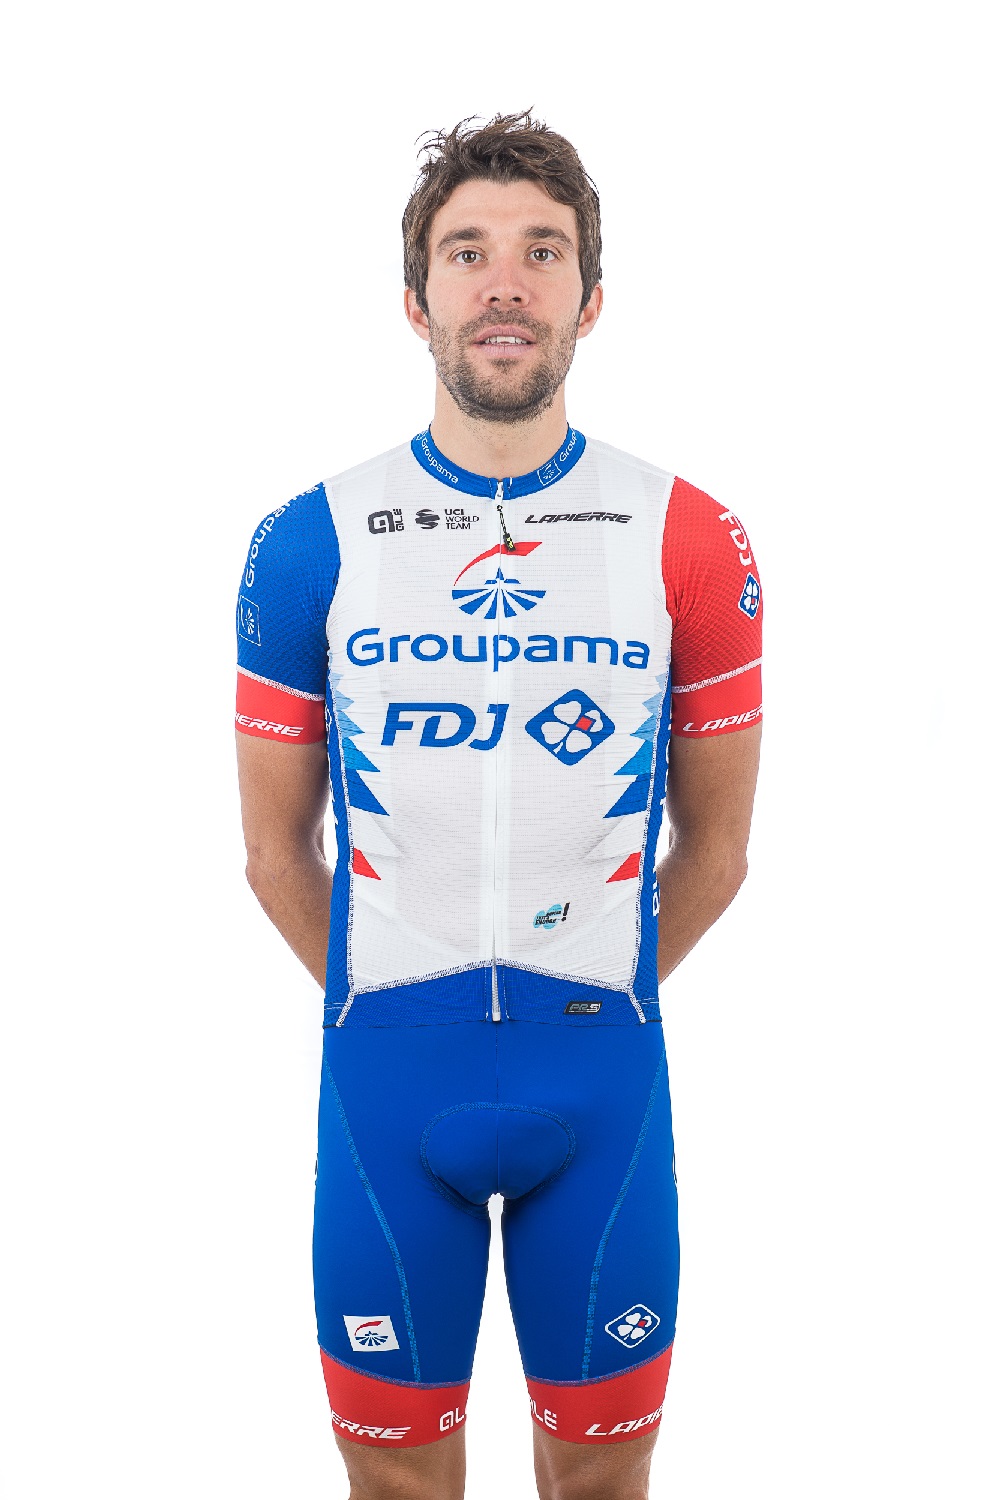 Galería: Los nuevos uniformes de equipos World Tour para 2021 – Ciclismo Internacional